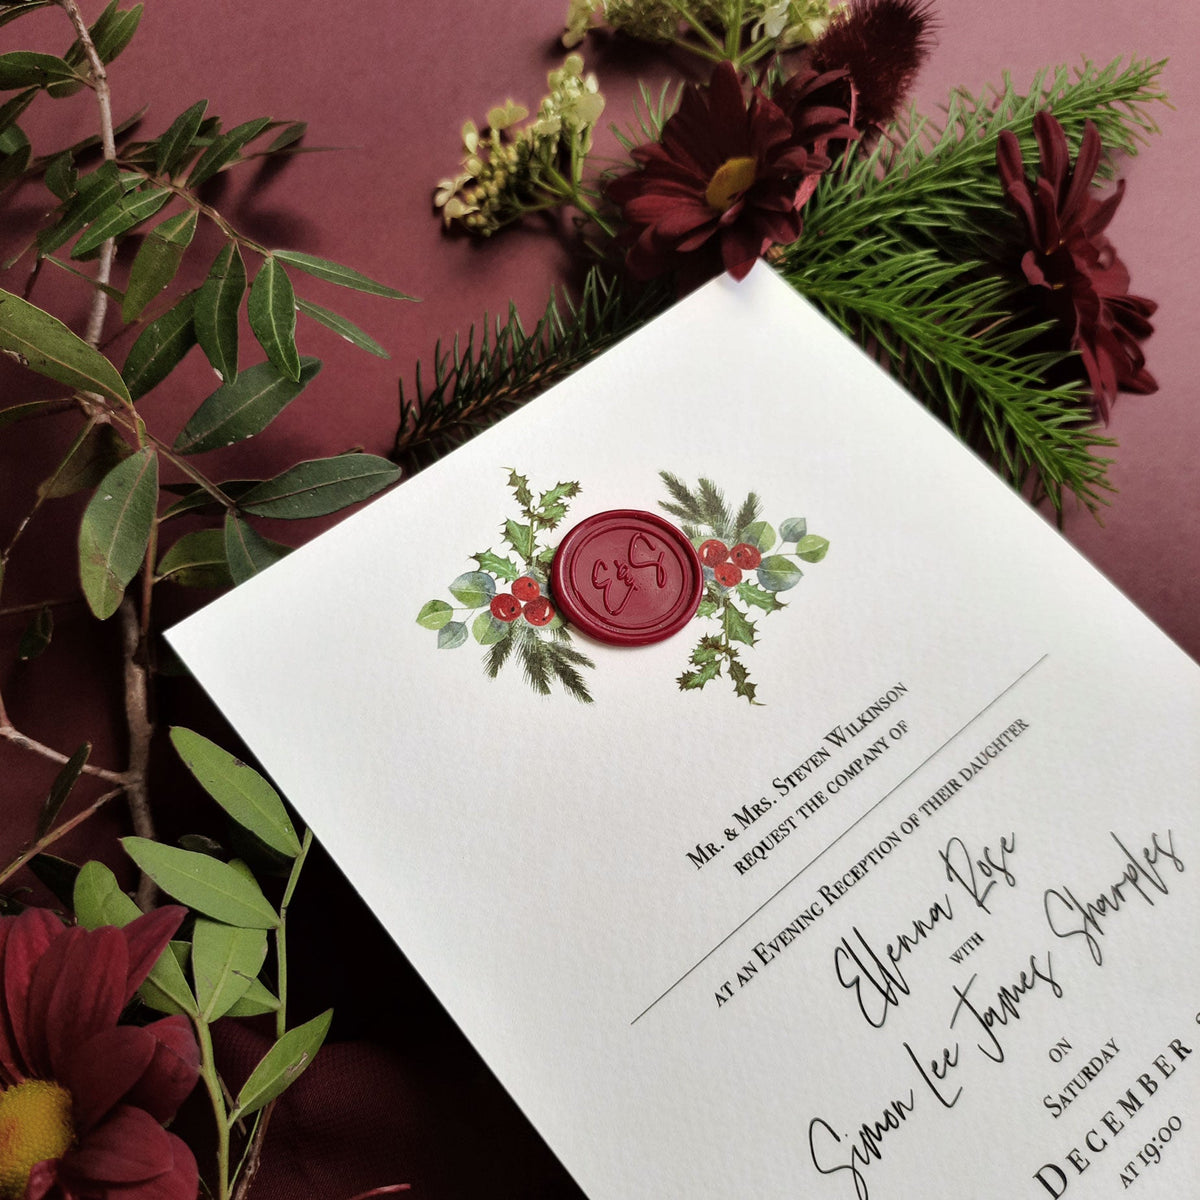 Le gui baiser | Invitations de mariage de Noël avec salle de véllum monogramme de sceau de cire